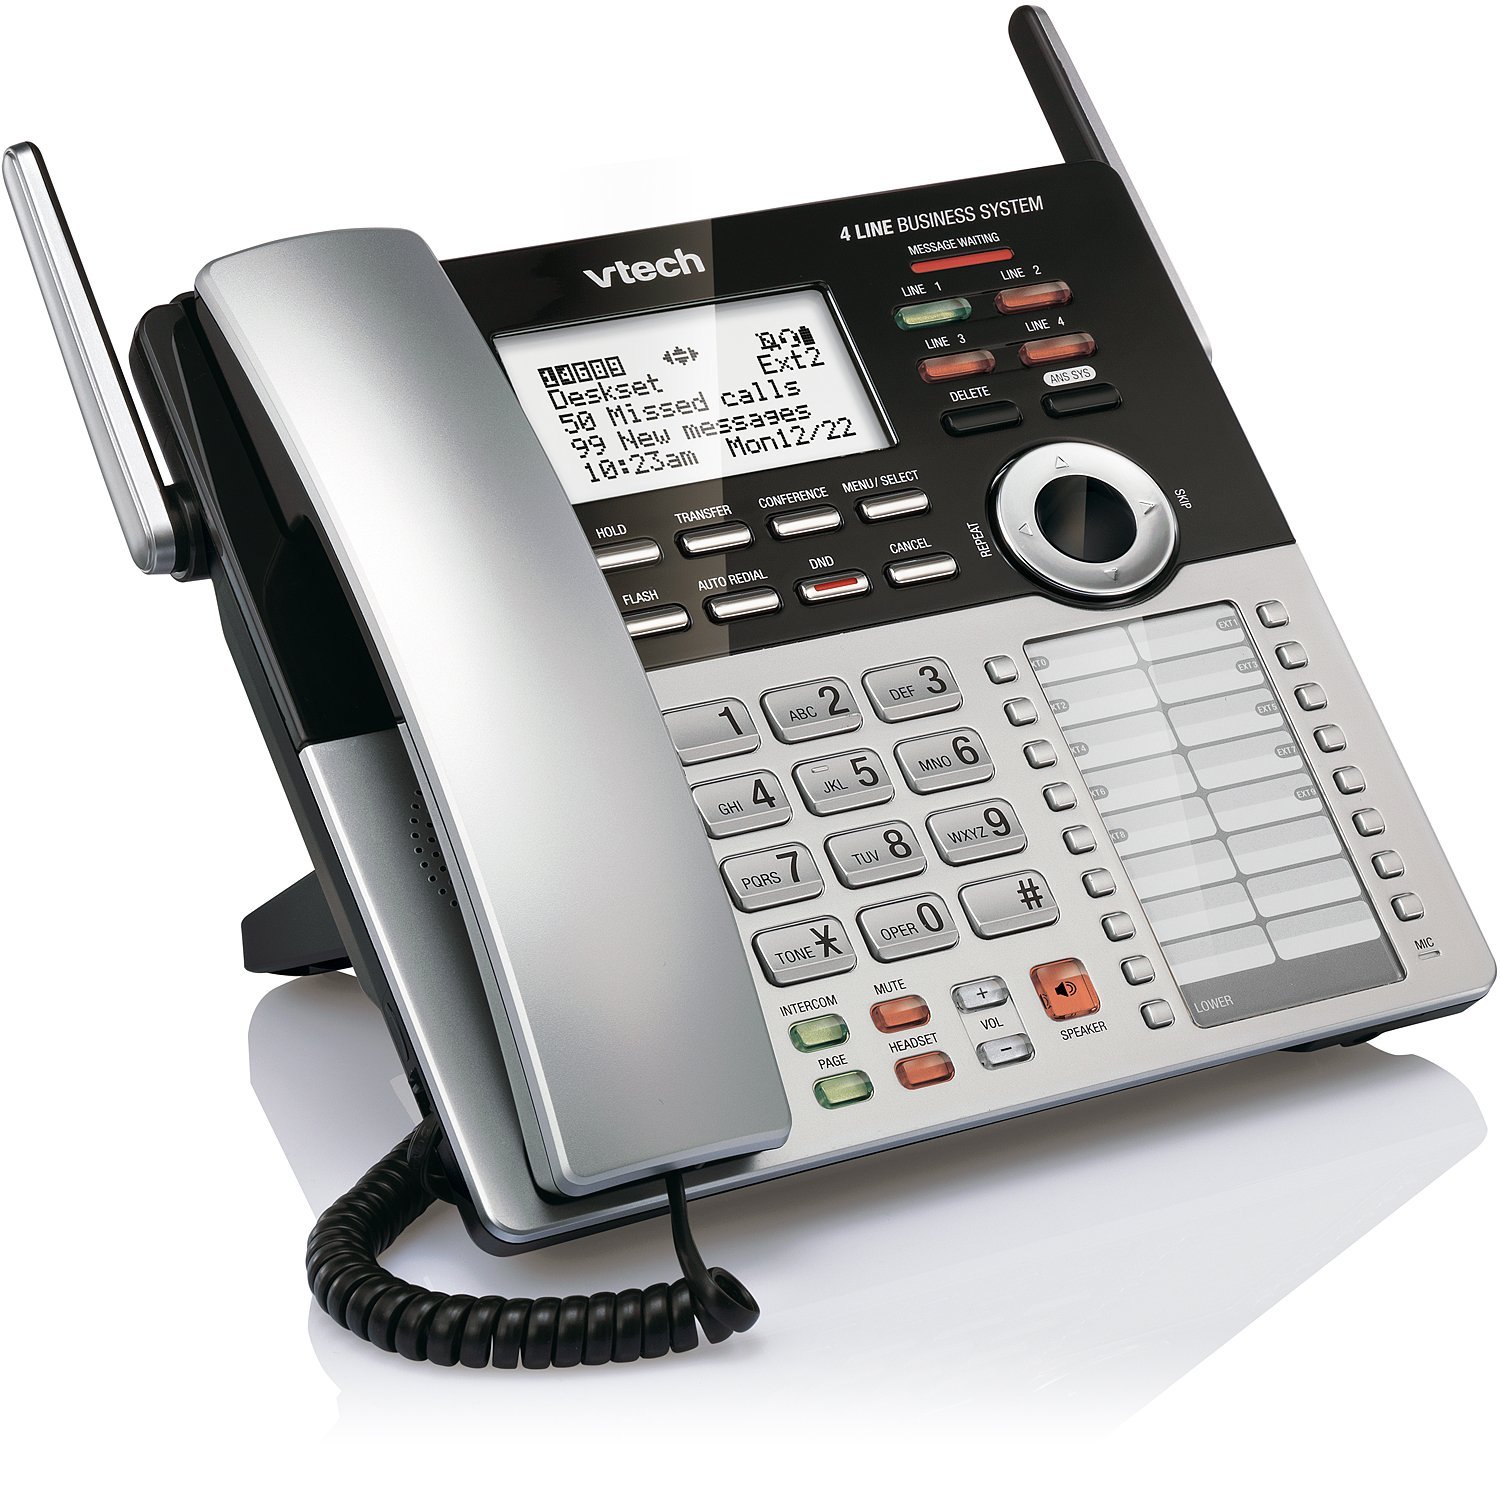 Vtech CM18245  CM18845 लघु व्यवसाय कार्यालय फोन प्रणाली...